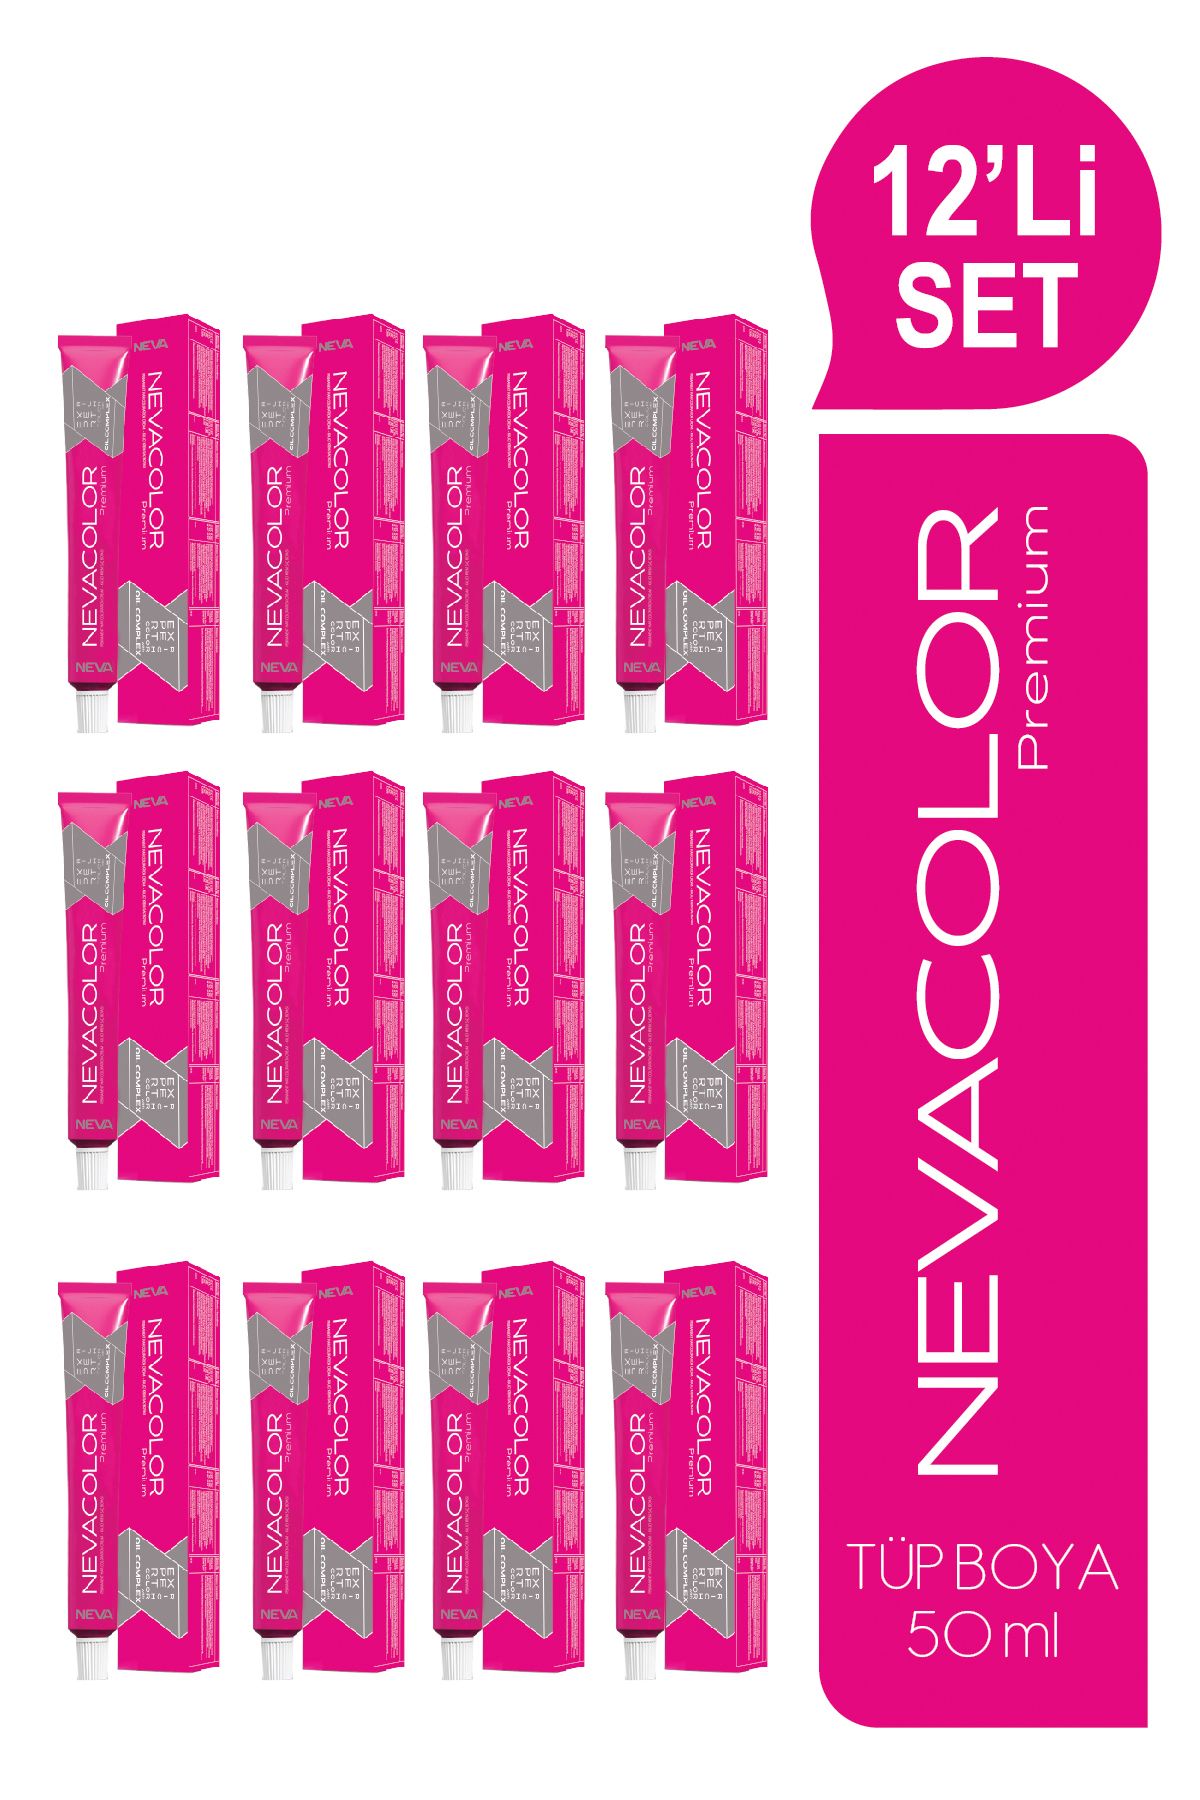 Nevacolor Premium 12'Lİ SET TÜP Kalıcı Krem Saç Boyası (50ml x 12 adet)